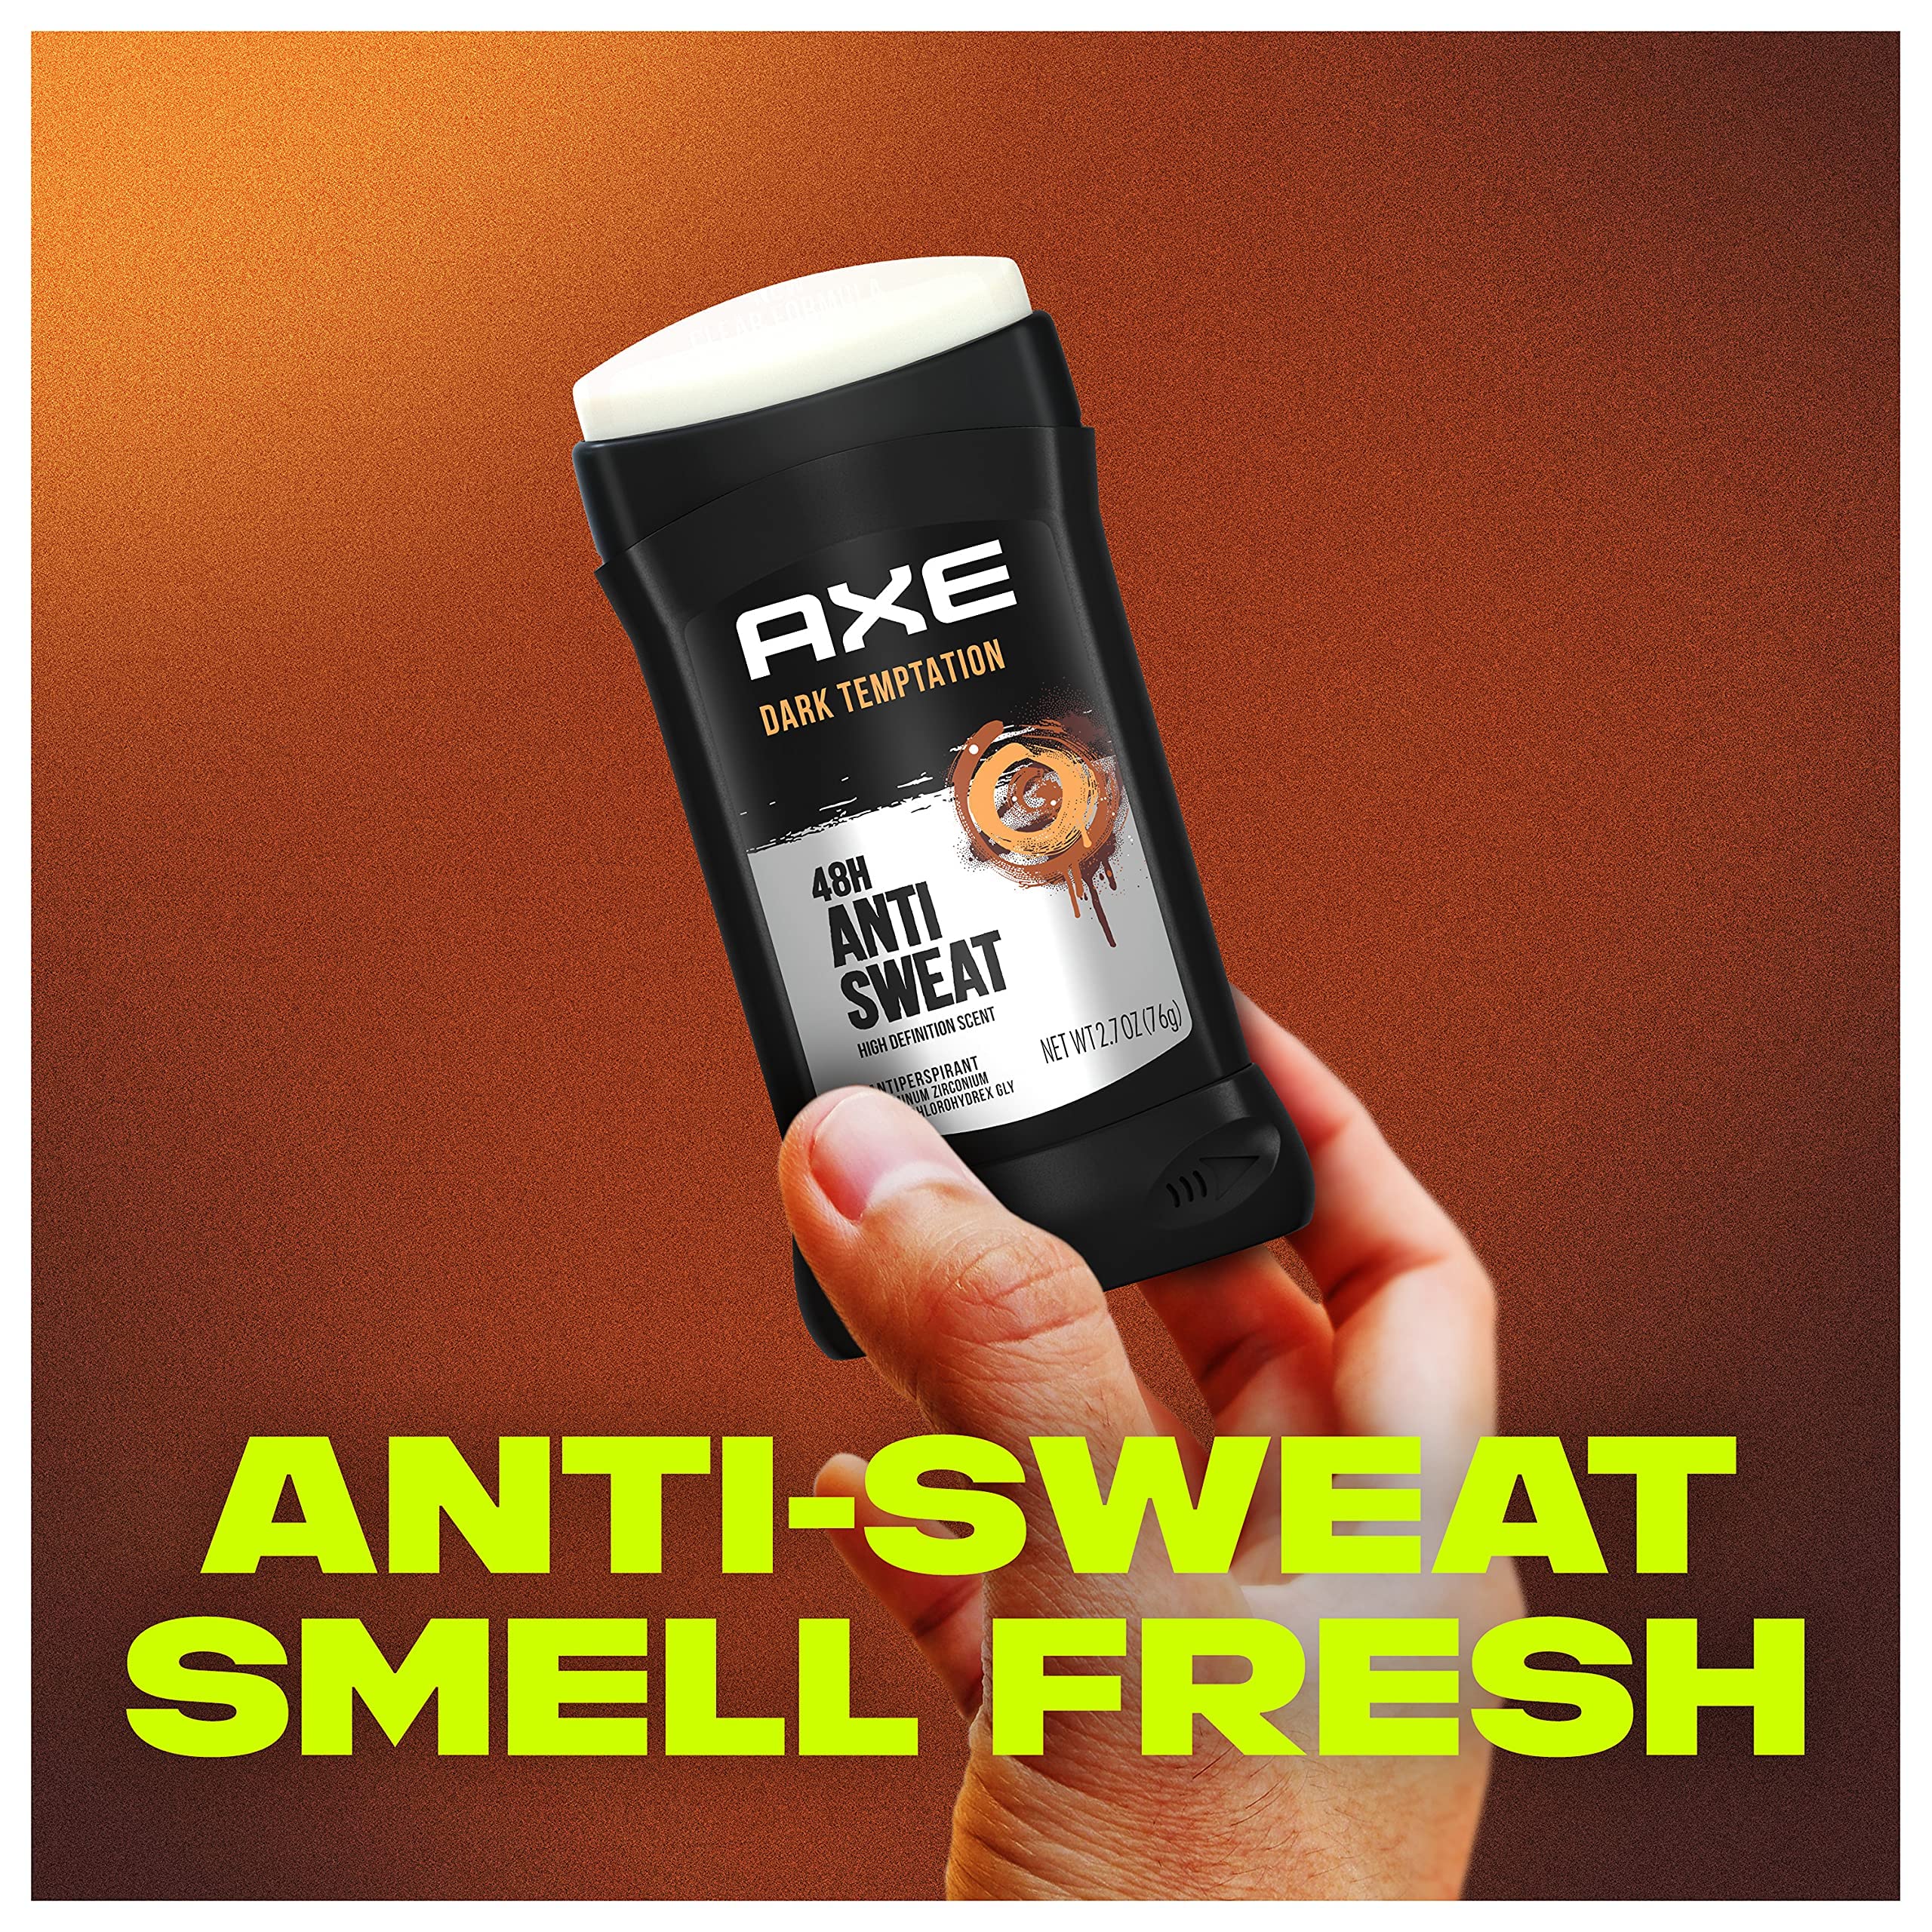 AXE Antiperspirant Deodorant Stick for Men, Dark Temptation 2.7 Ounce (Pack of 6)